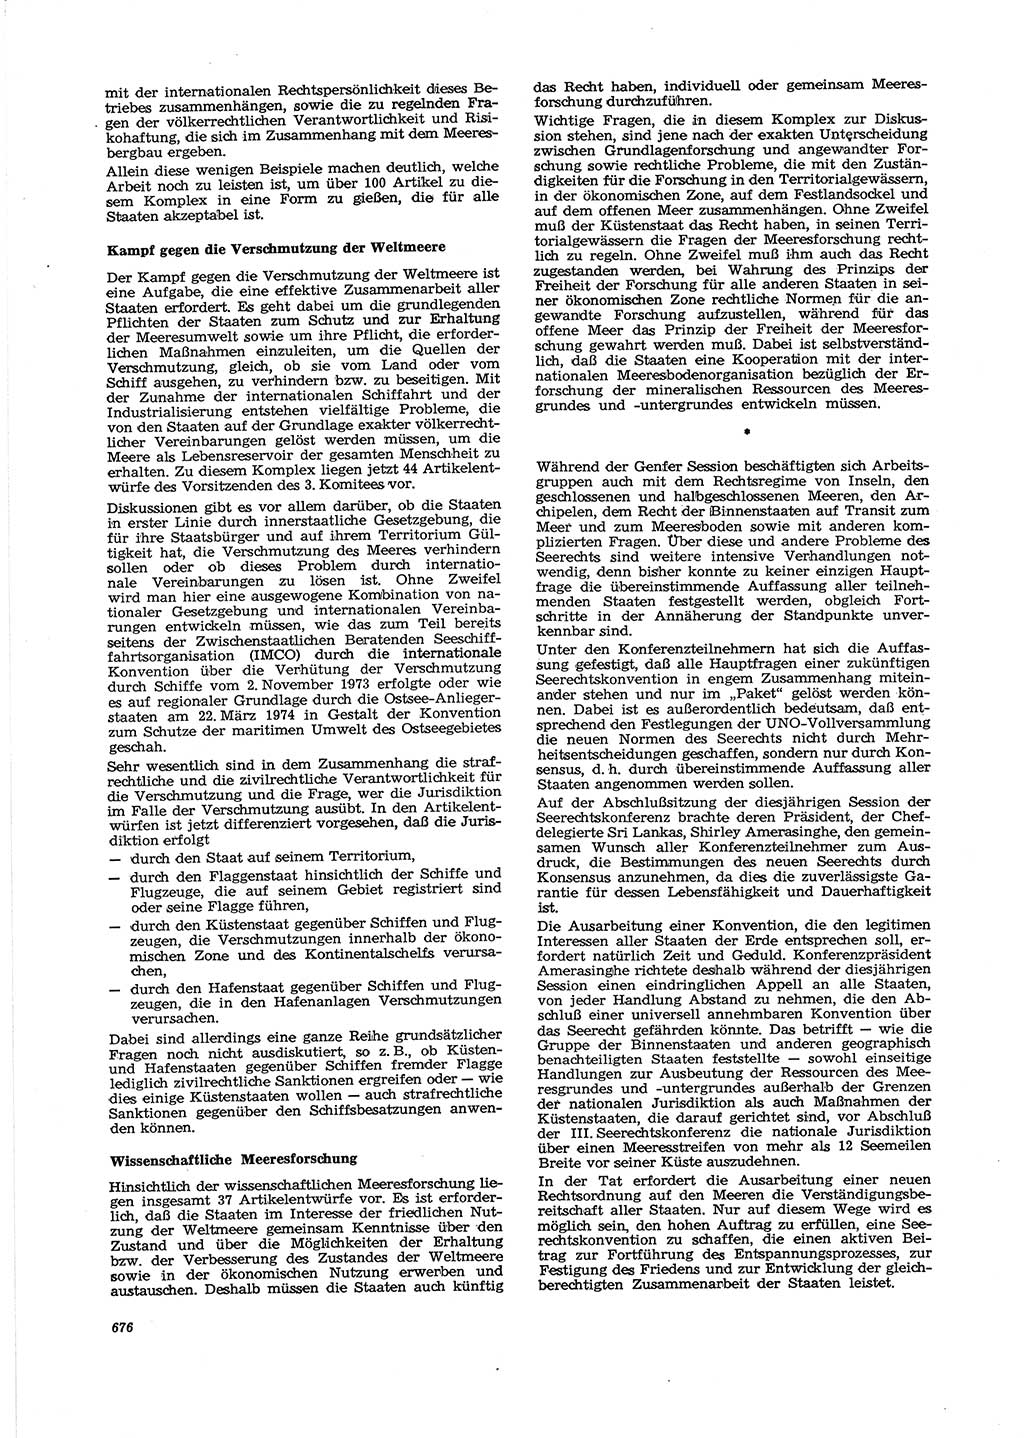 Neue Justiz (NJ), Zeitschrift für Recht und Rechtswissenschaft [Deutsche Demokratische Republik (DDR)], 29. Jahrgang 1975, Seite 676 (NJ DDR 1975, S. 676)